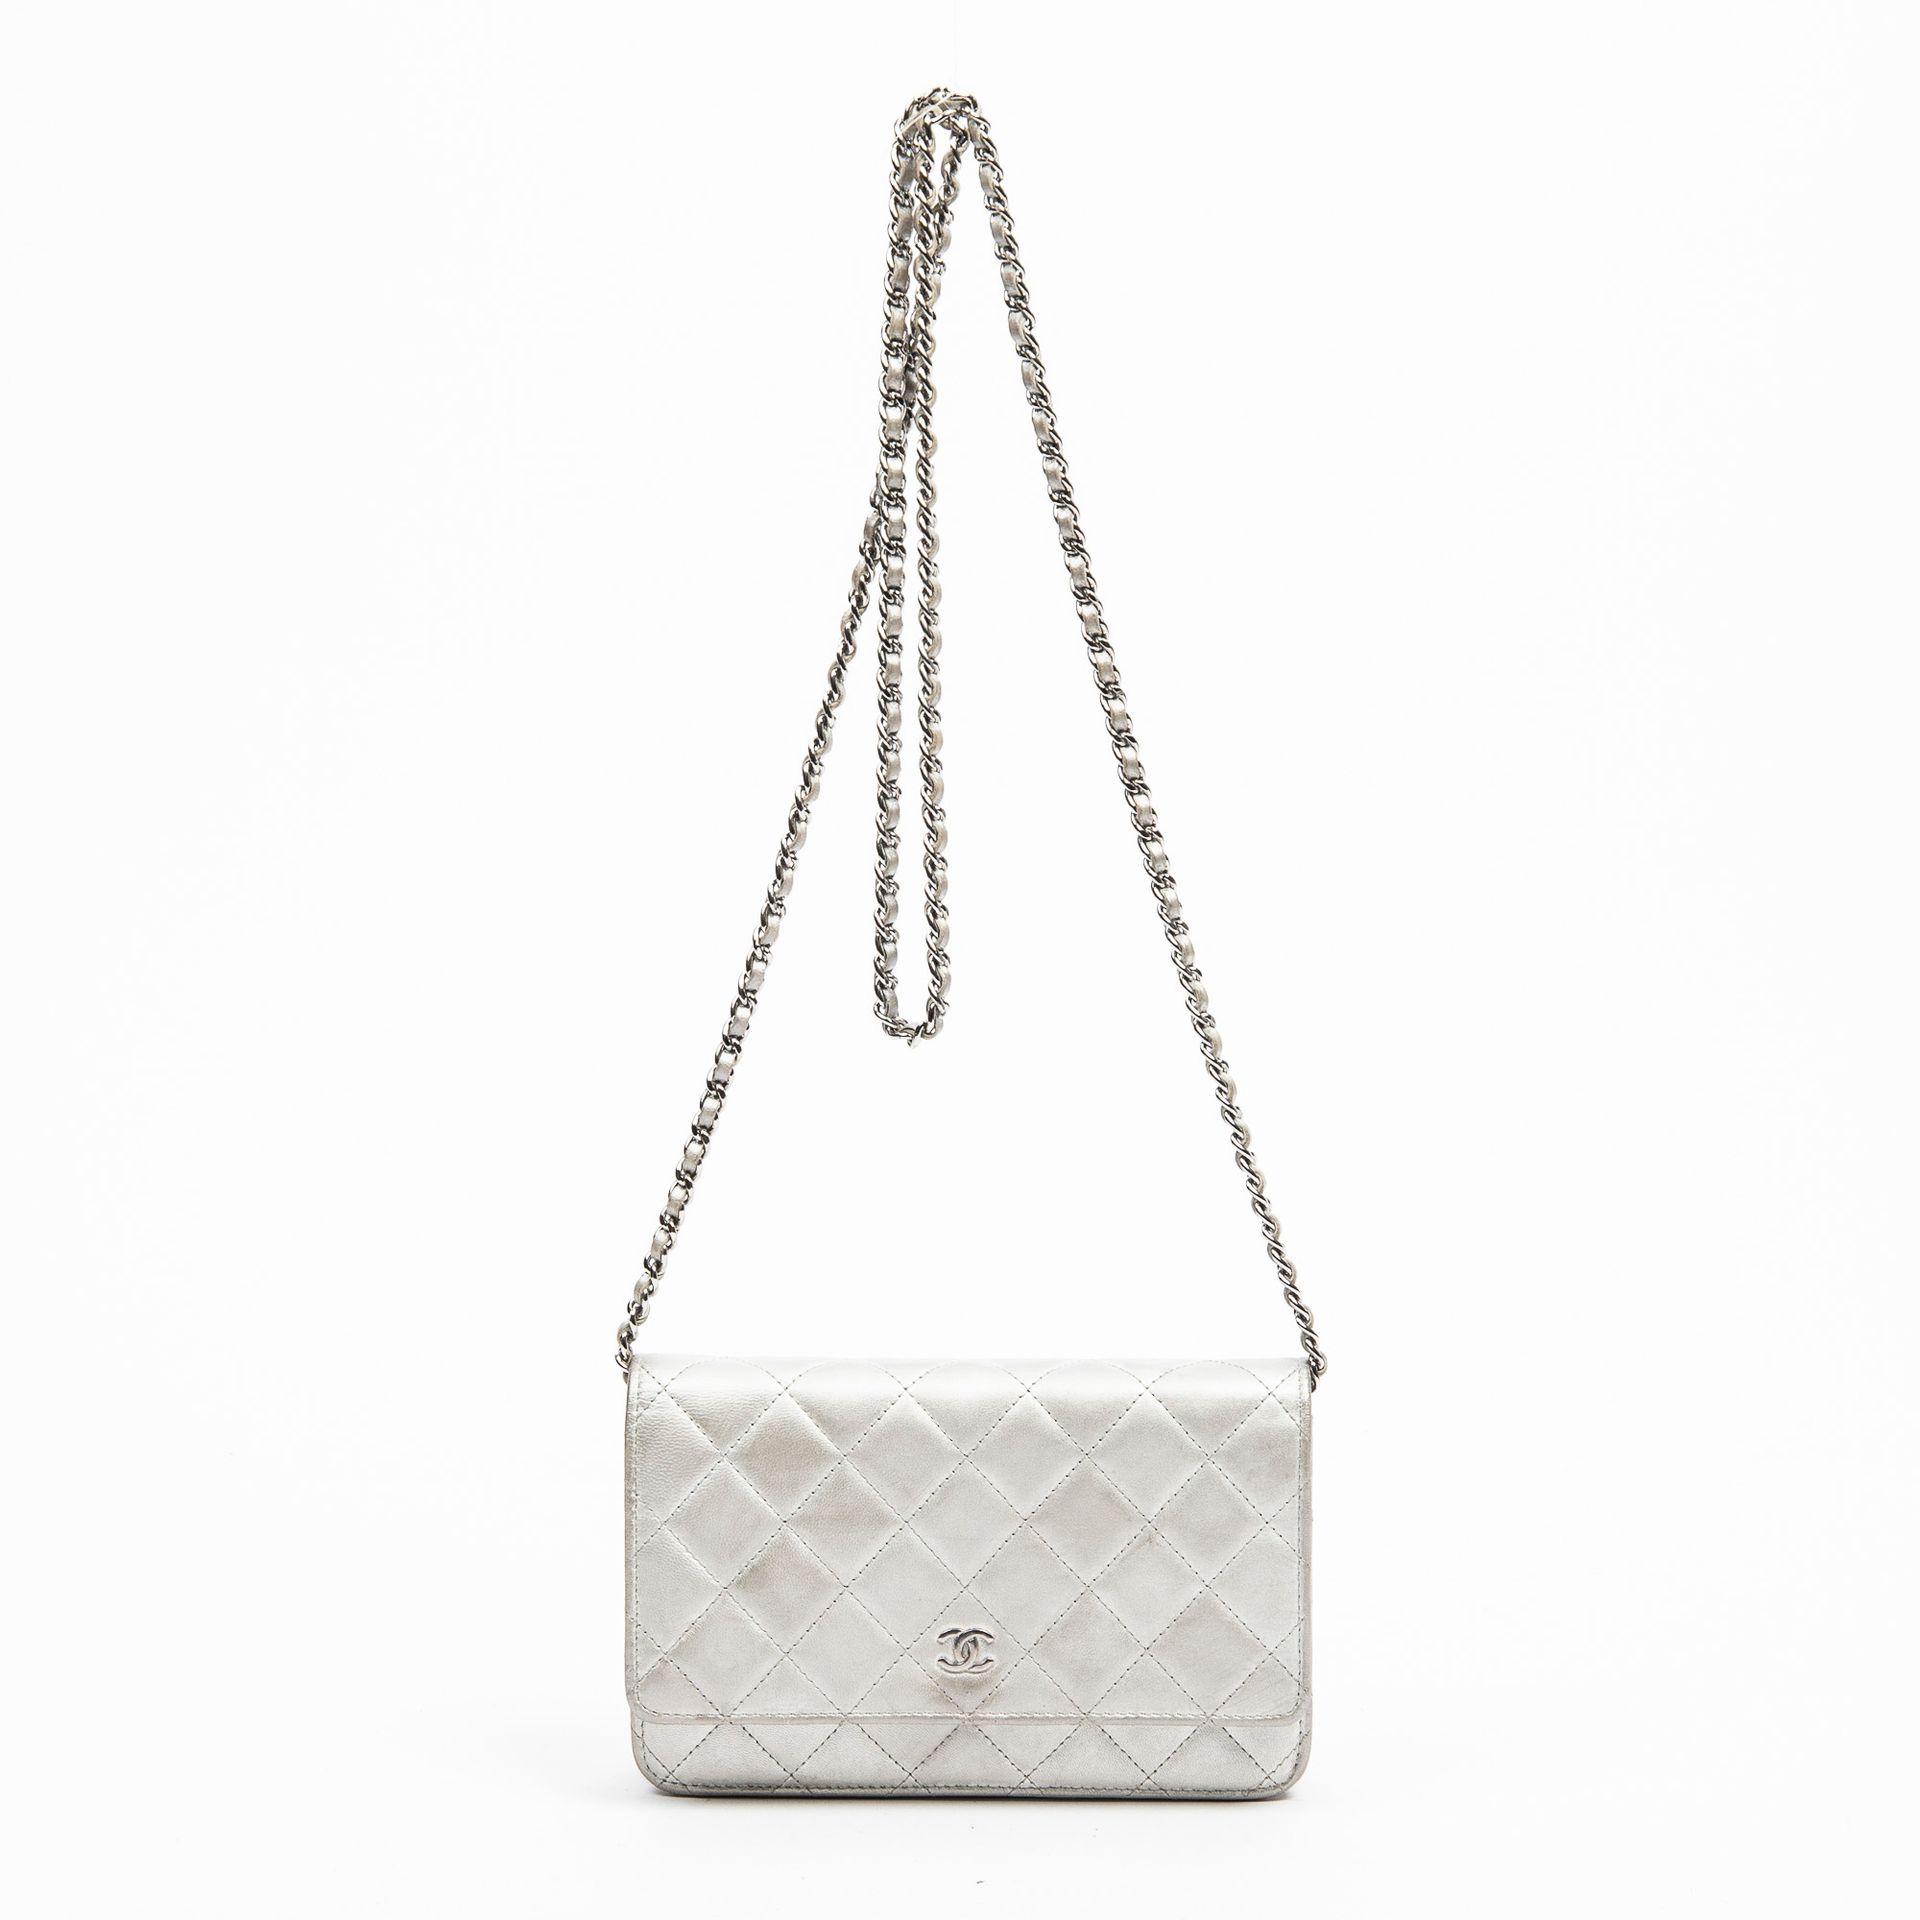 Chanel 香奈儿 - 银色小羊皮链式钱包 - 内部为小羊皮和珍珠灰色面料 - 链式肩带，可肩背或斜挎 - 有真品编号 - 尺寸：19x12x3cm - 状态&hellip;